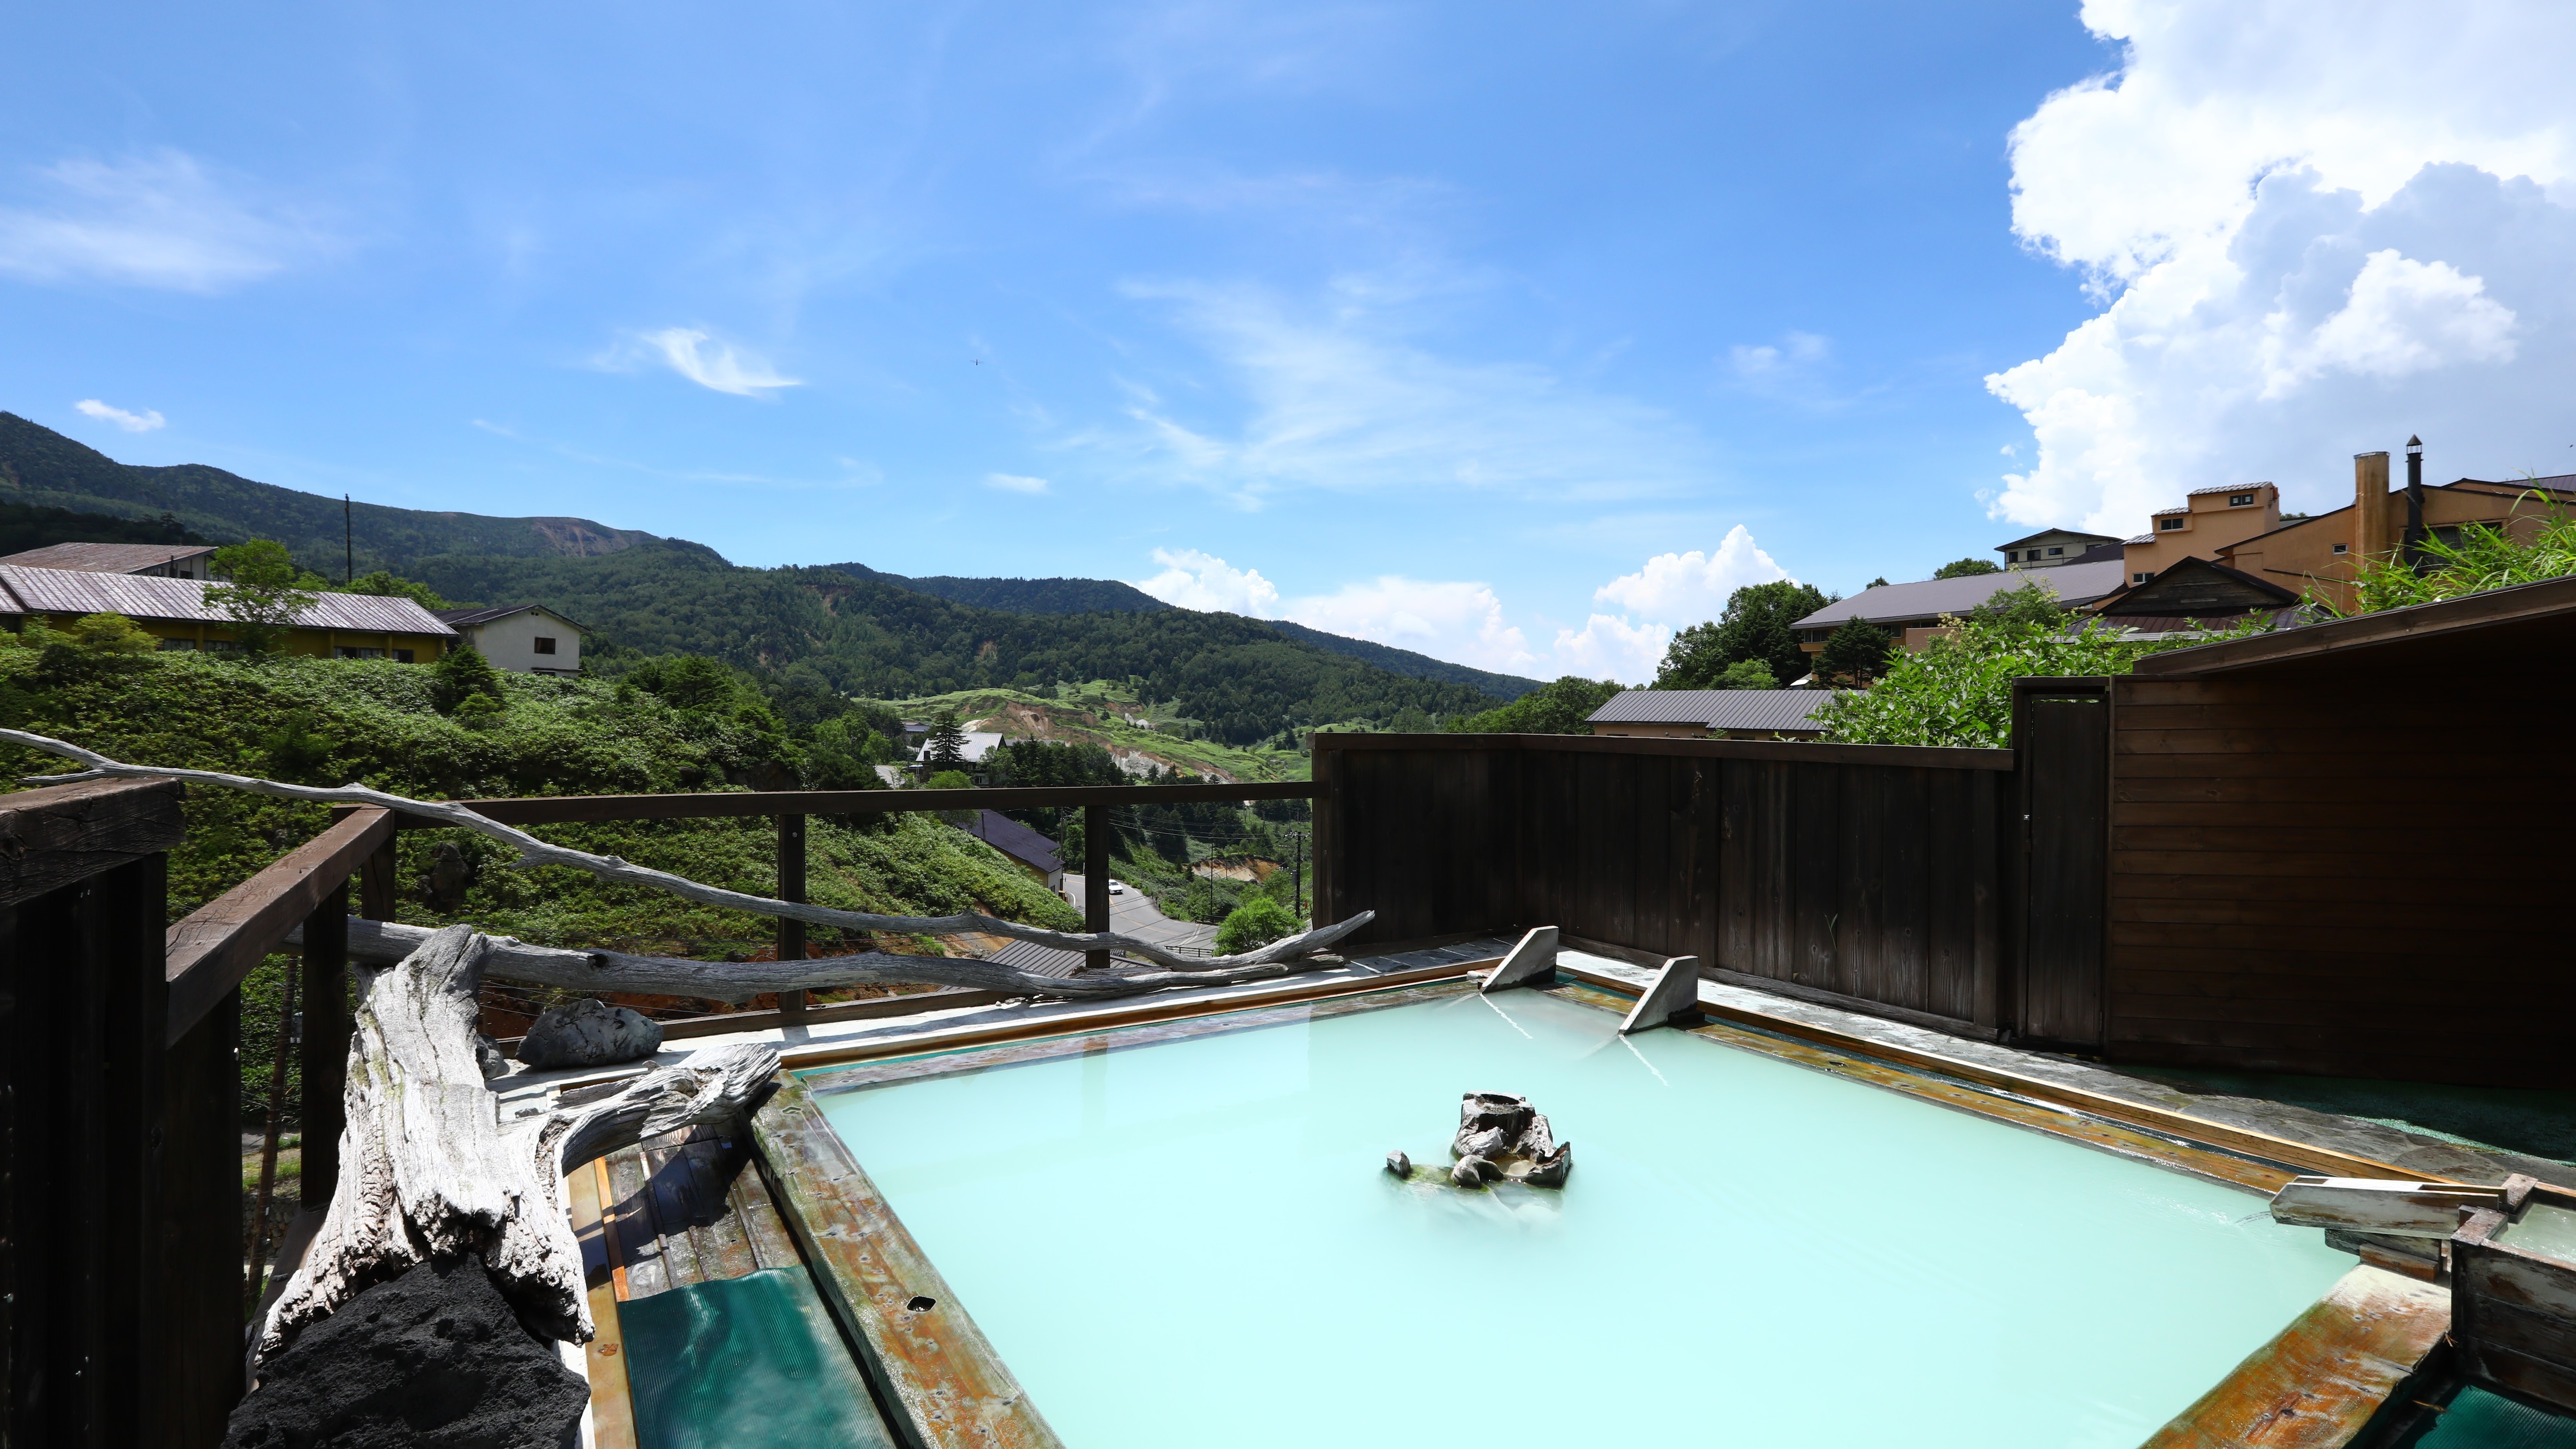 Open-air bath "Gokuraku no Yu" A hot spring with a feeling of openness